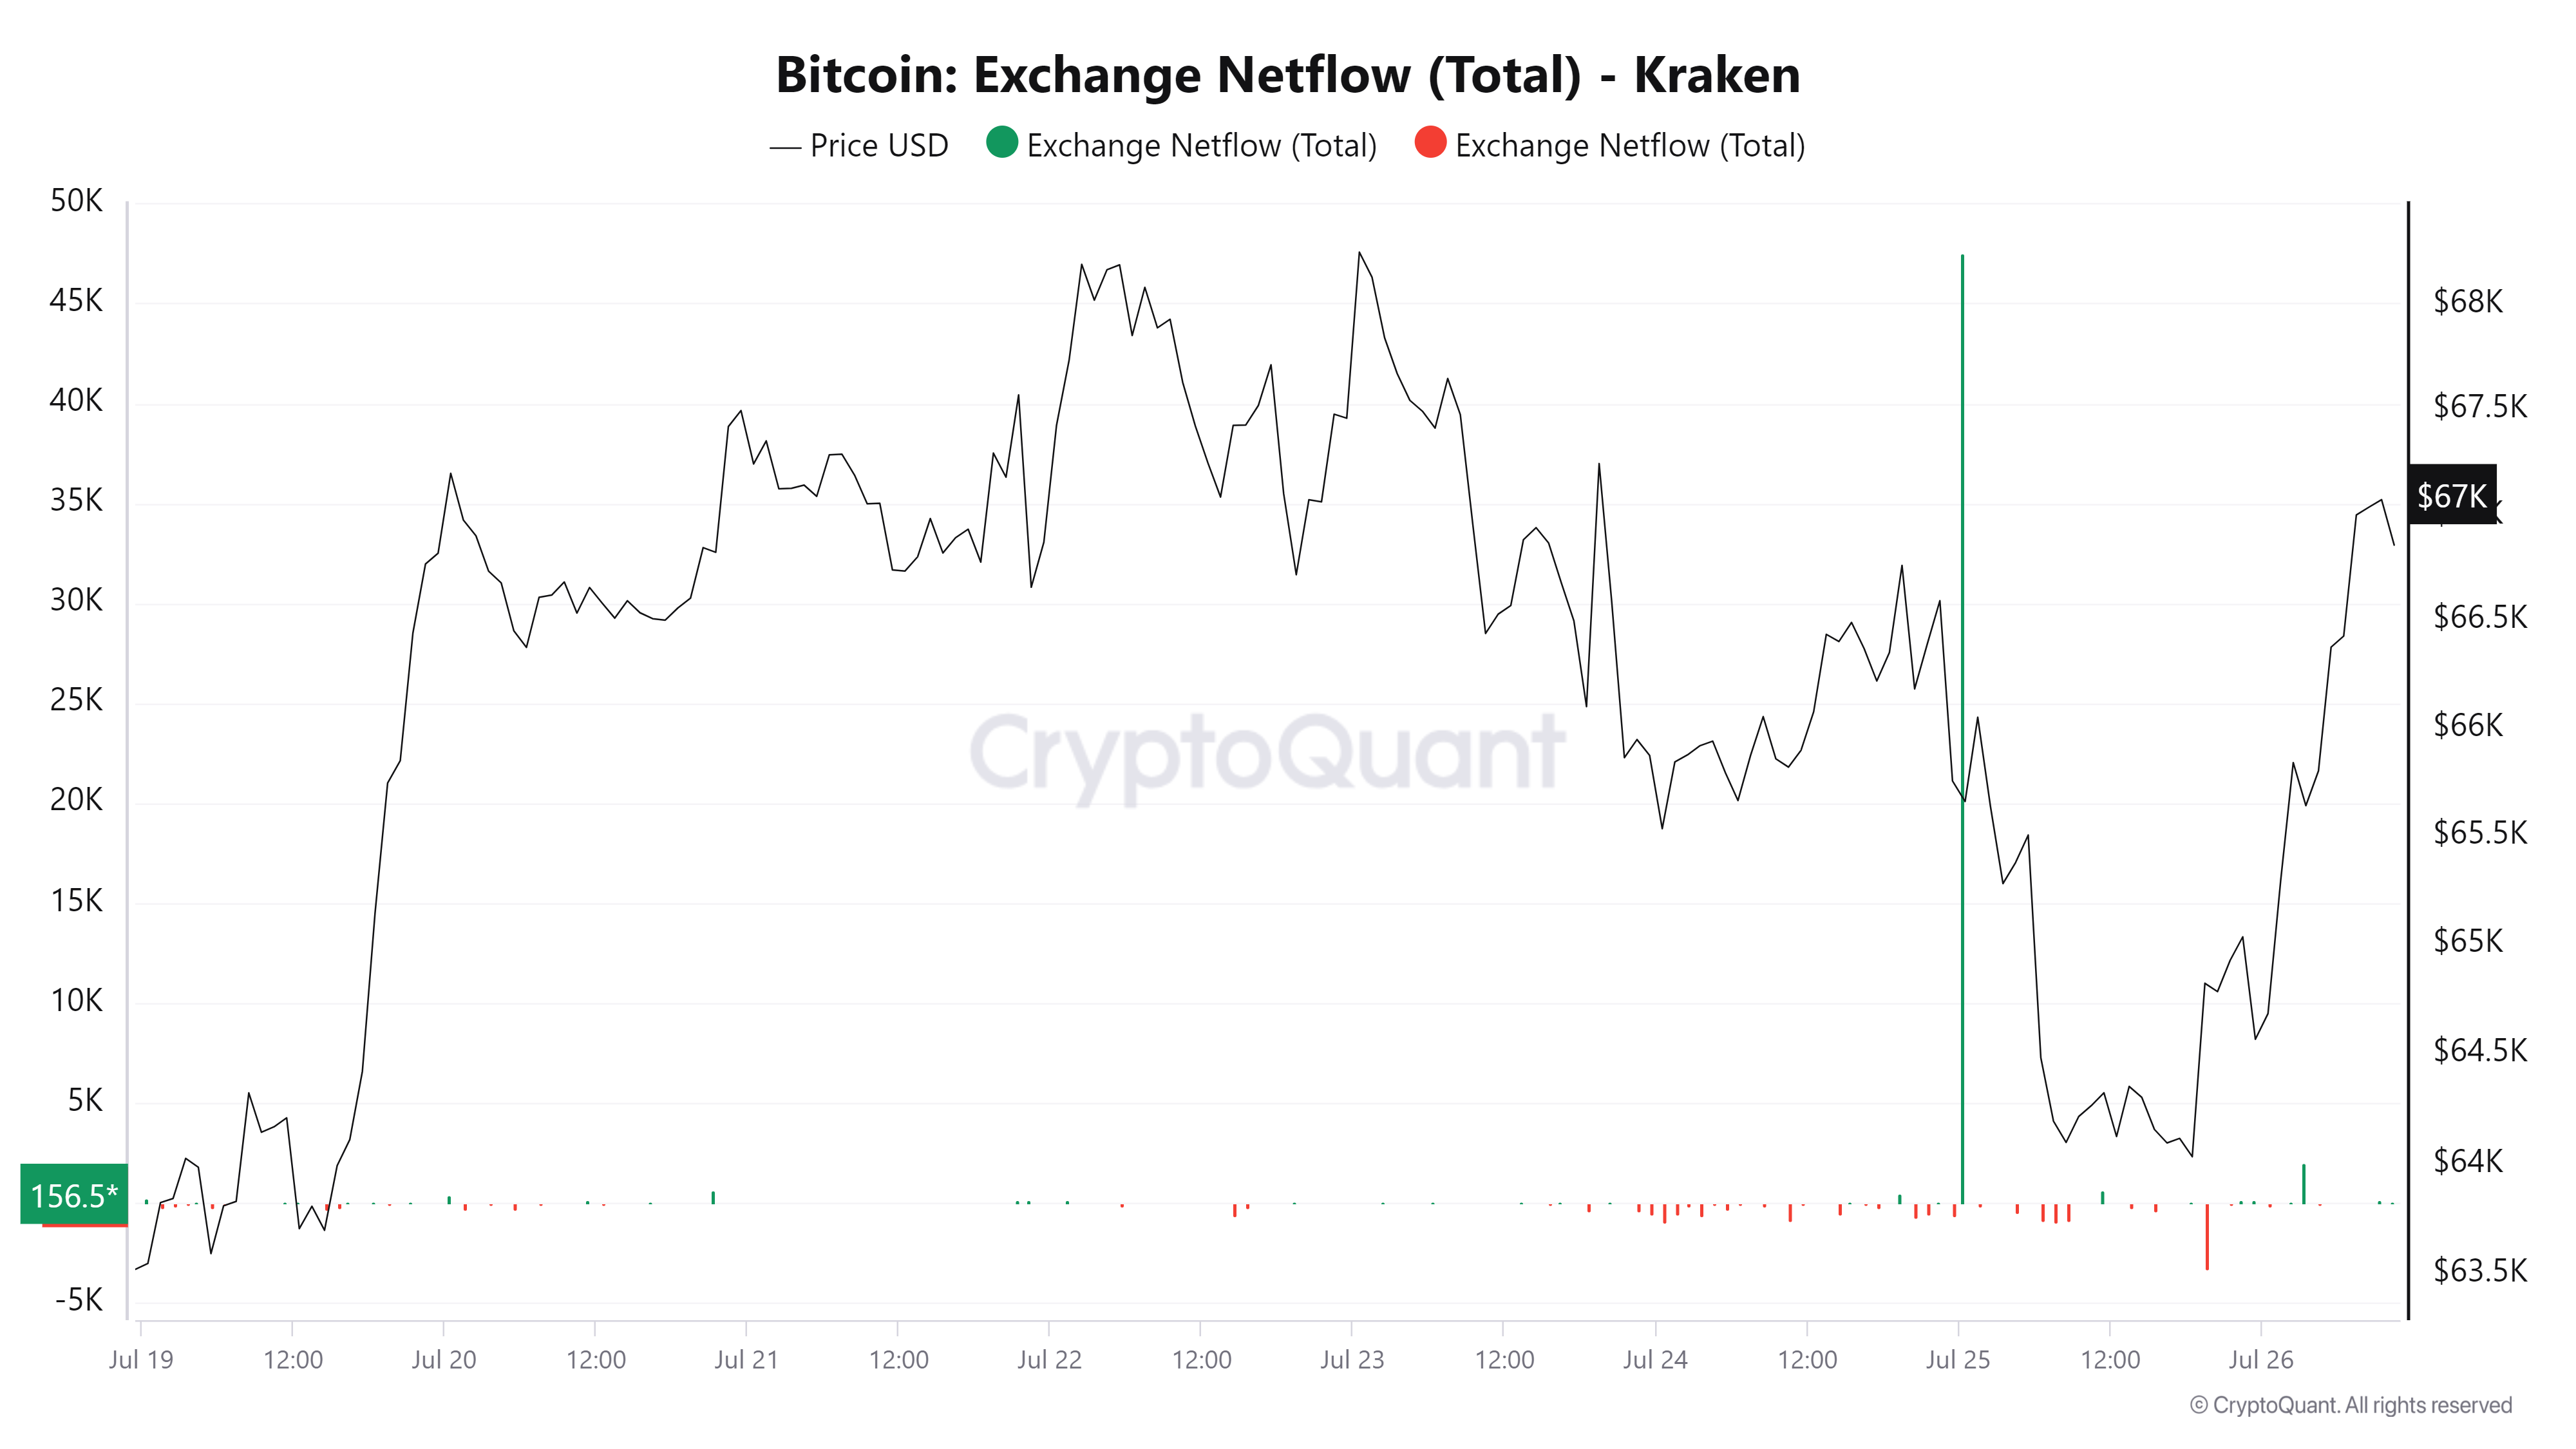 Bitcoin Exchange Netflow on Kraken chart